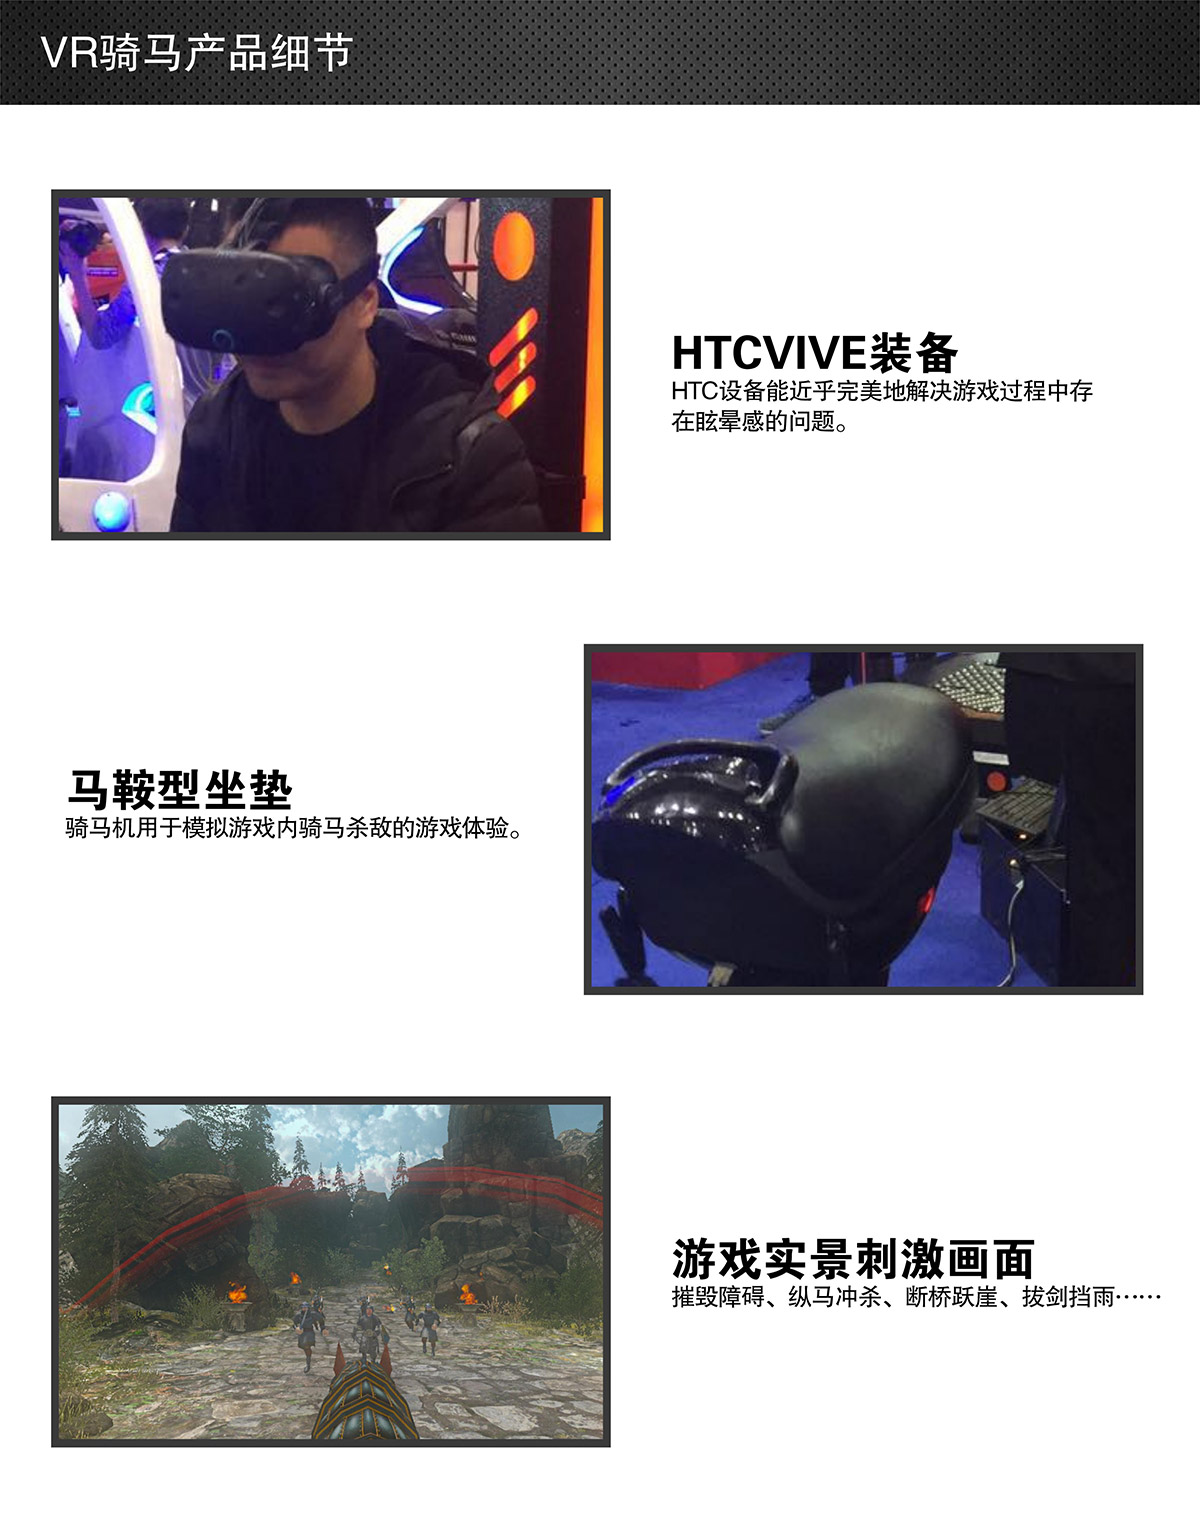 球幕影院VR骑马细节展示.jpg